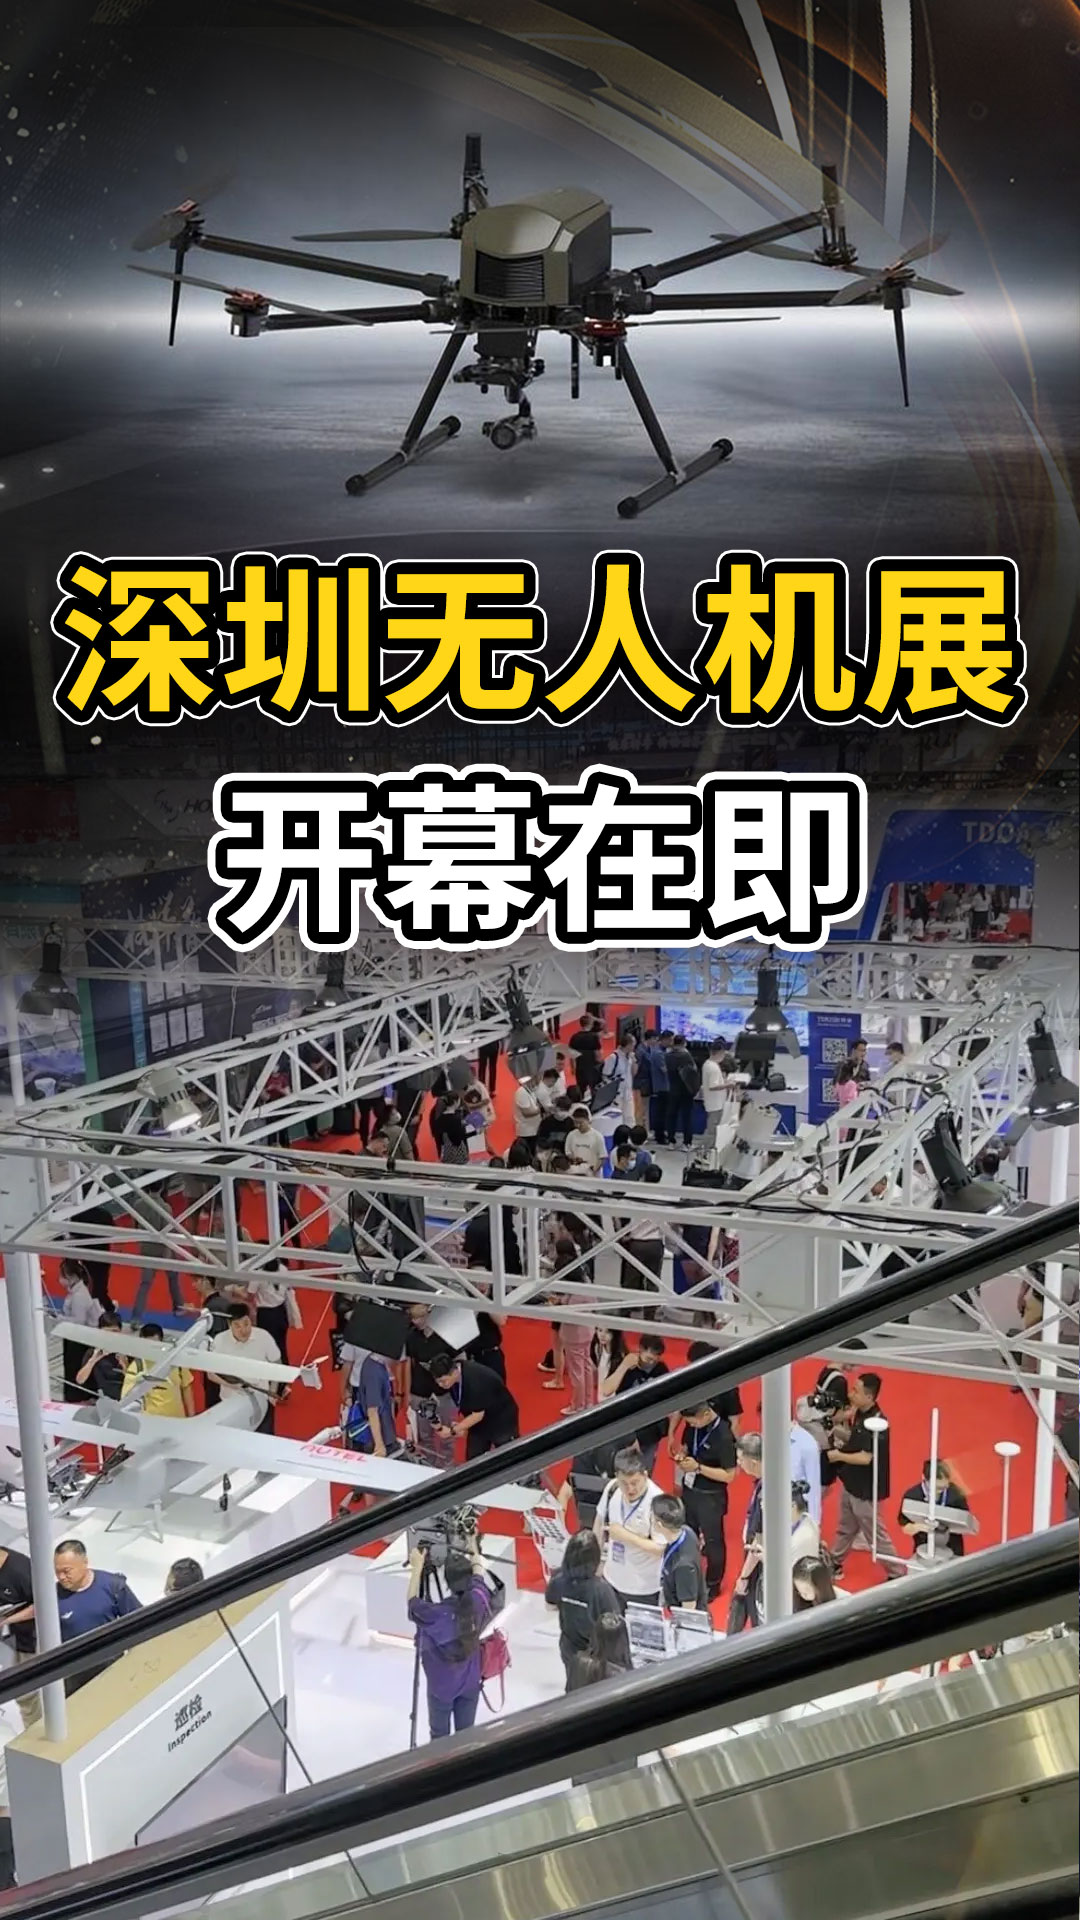 國產紅外芯有多??？深圳無人機展見分曉！#紅外熱成像 #紅外機芯 #無人機 